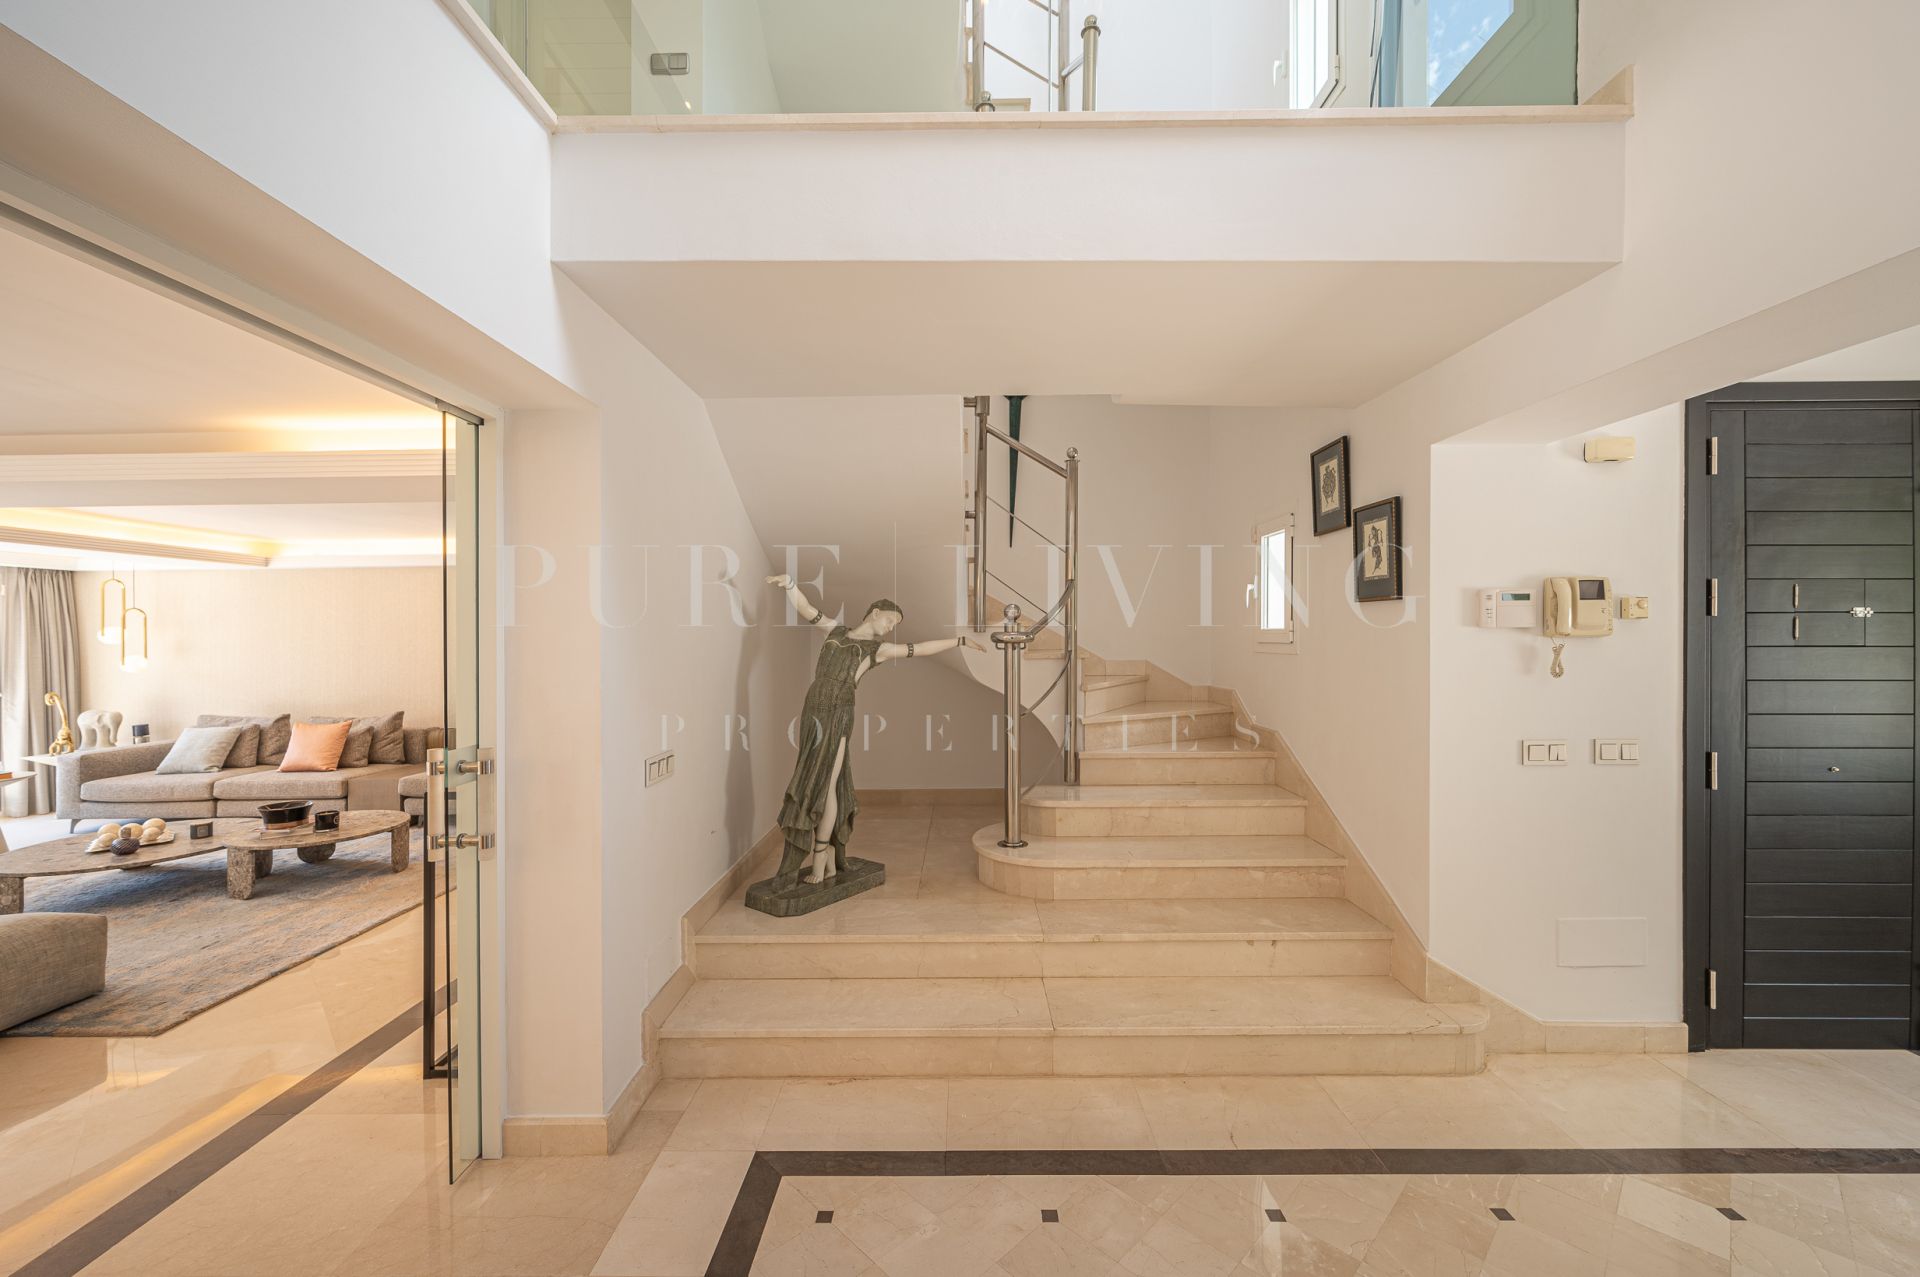 Une superbe maison familiale à Altos Reales, l'une des urbanisations les plus recherchées du Golden Mile de Marbella